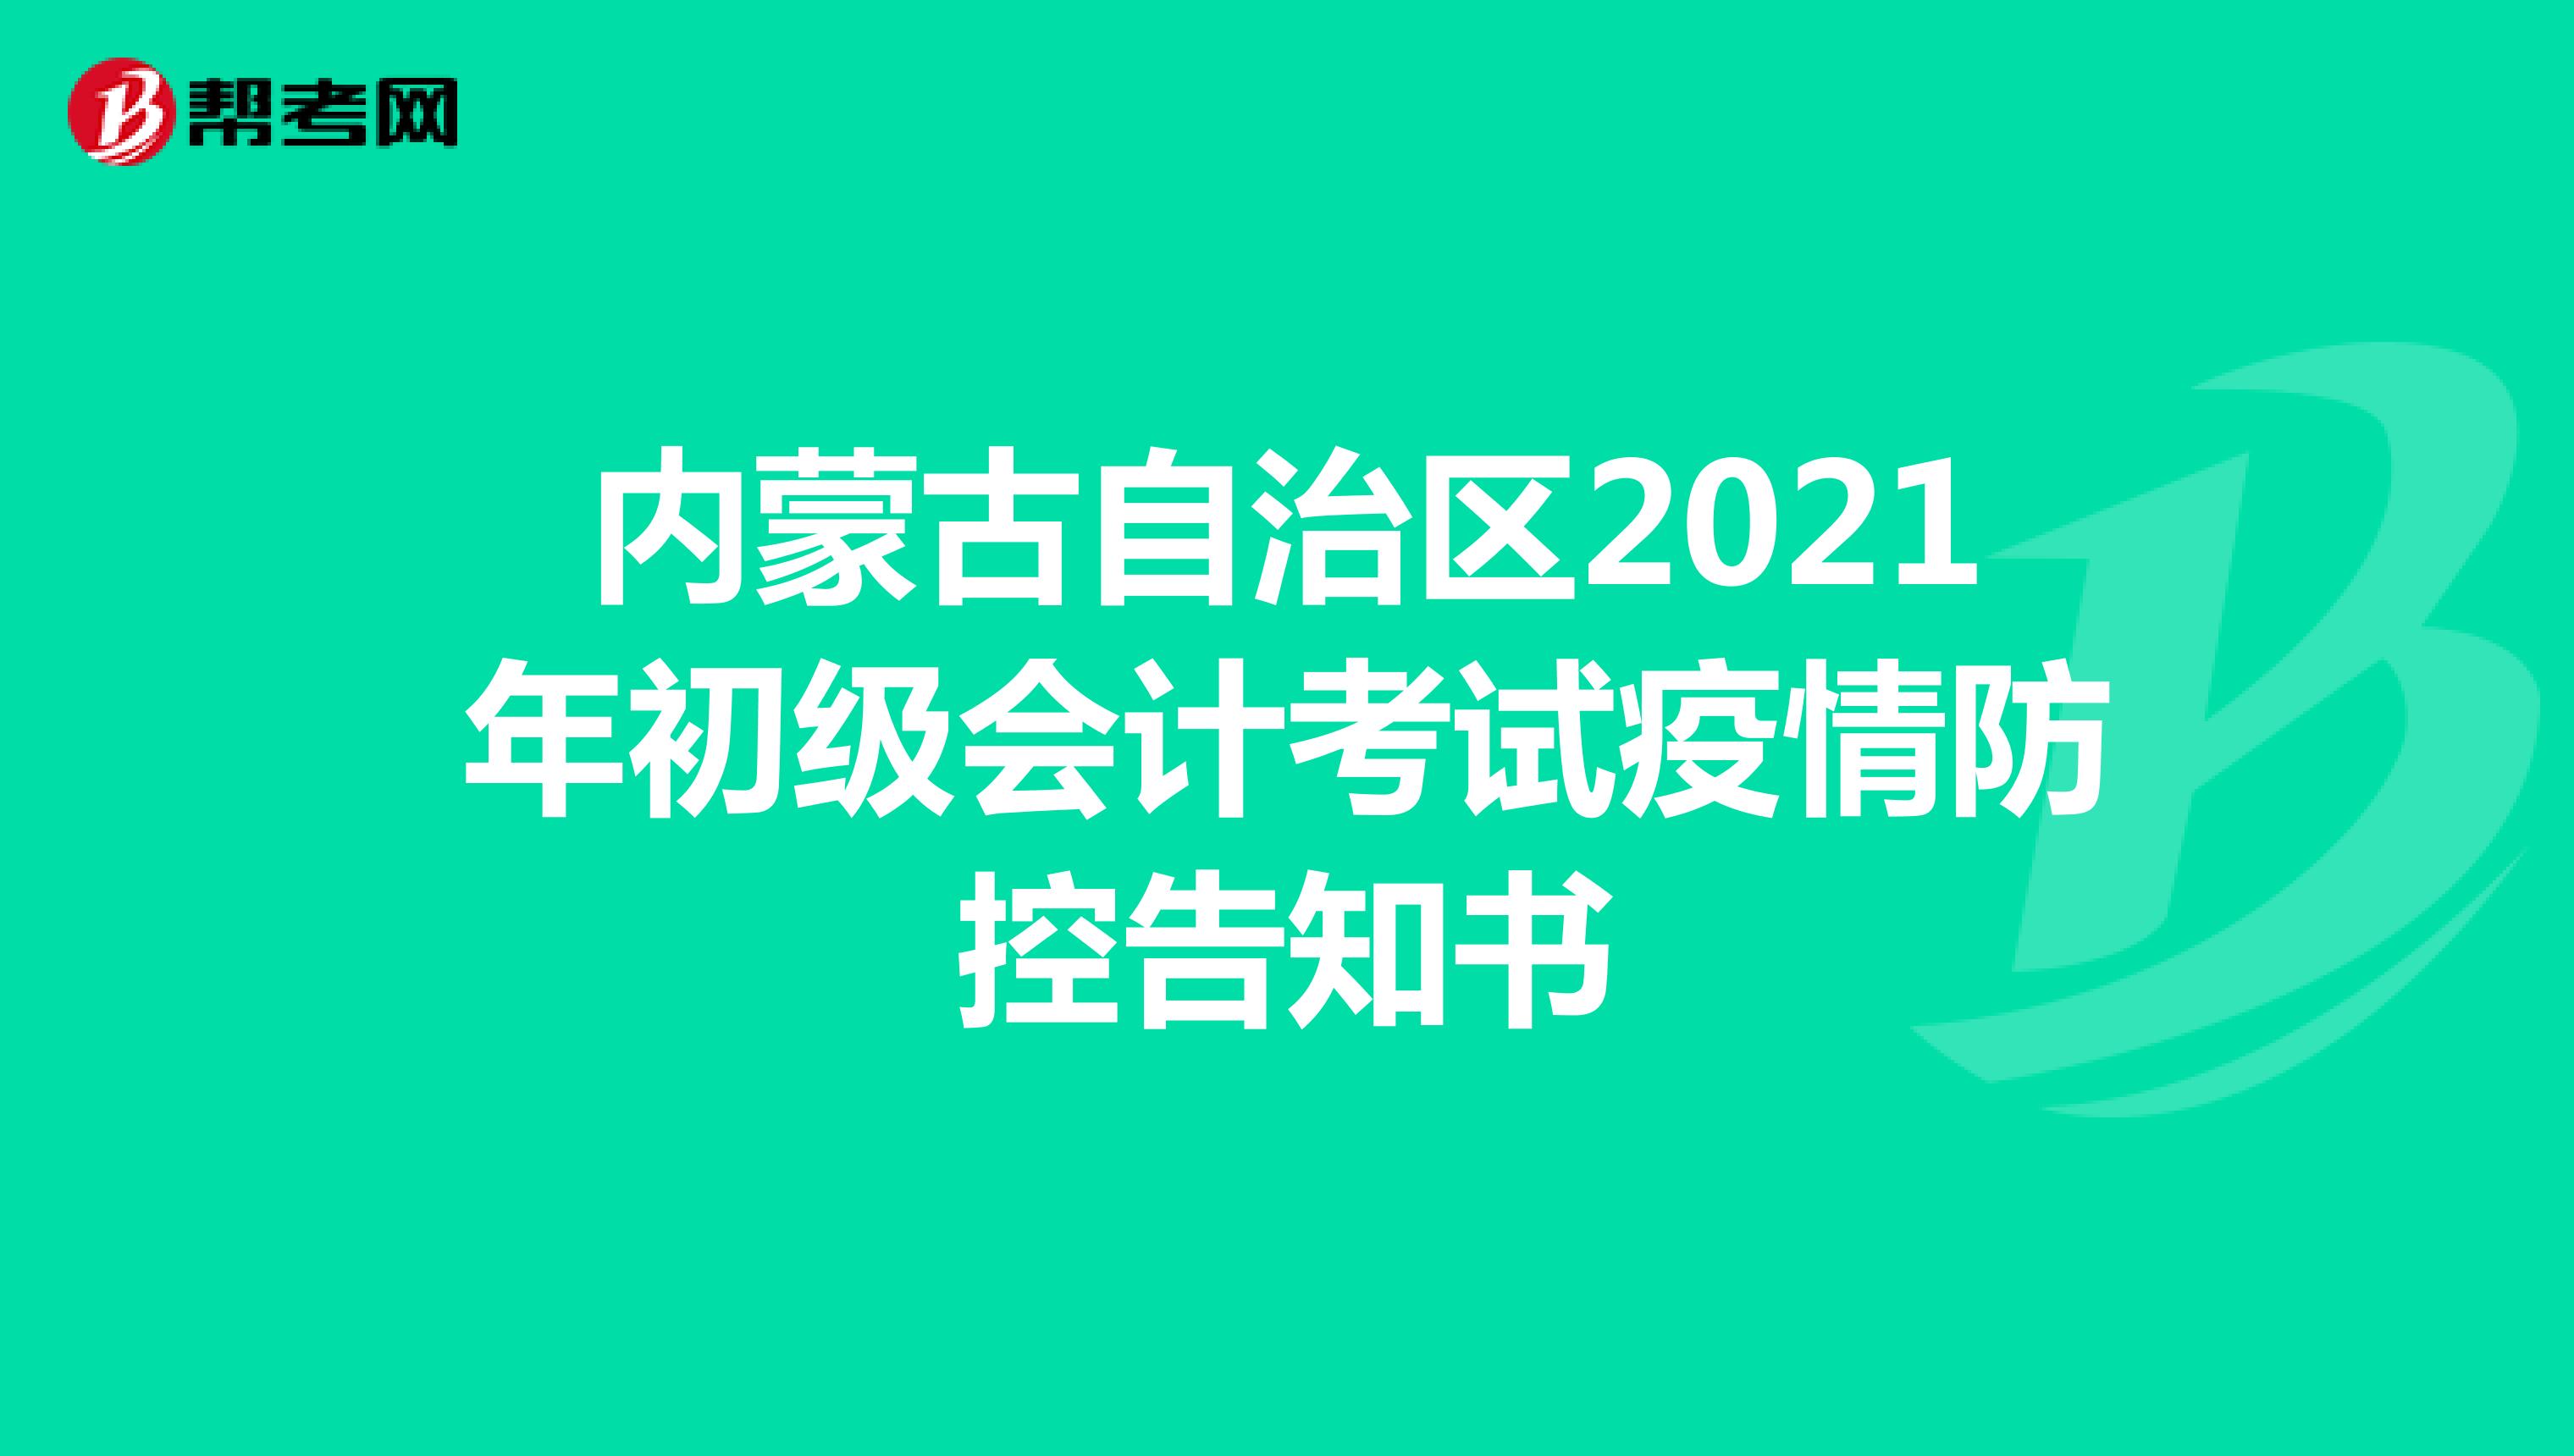 内蒙古自治区2021年初级会计考试疫情防控告知书